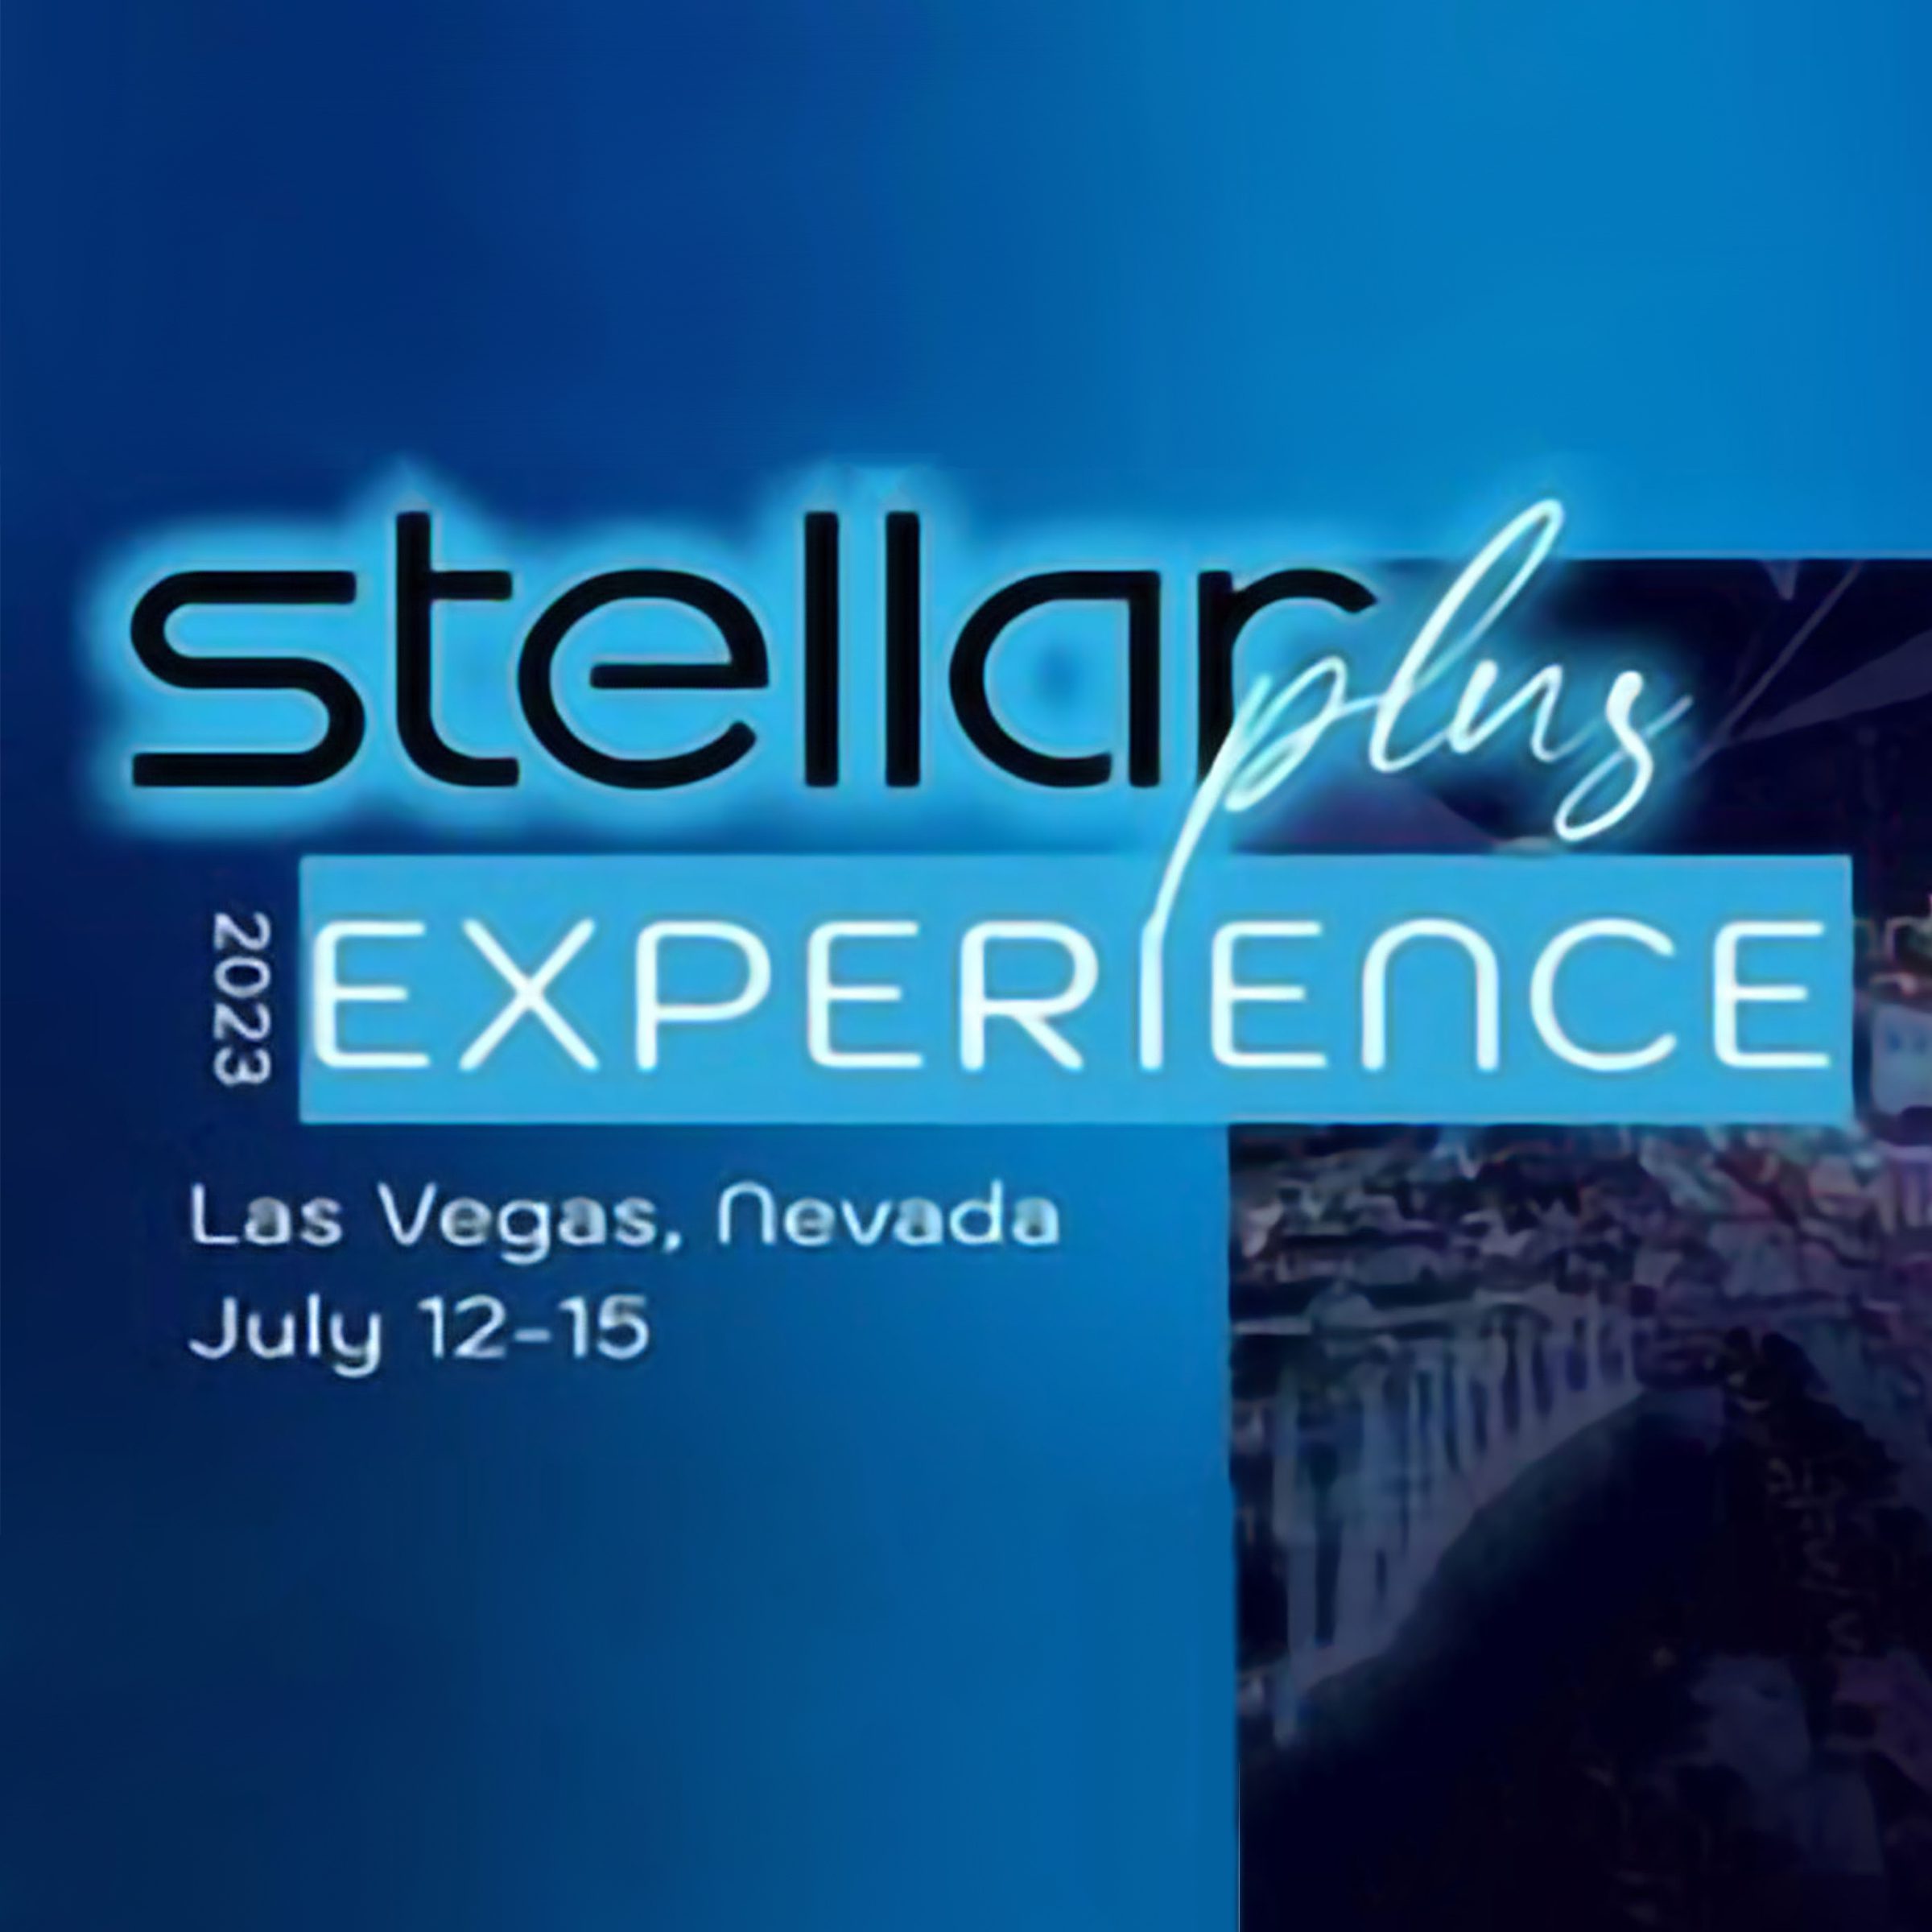 Stellar Awards plus Experience via 360 Magazine.